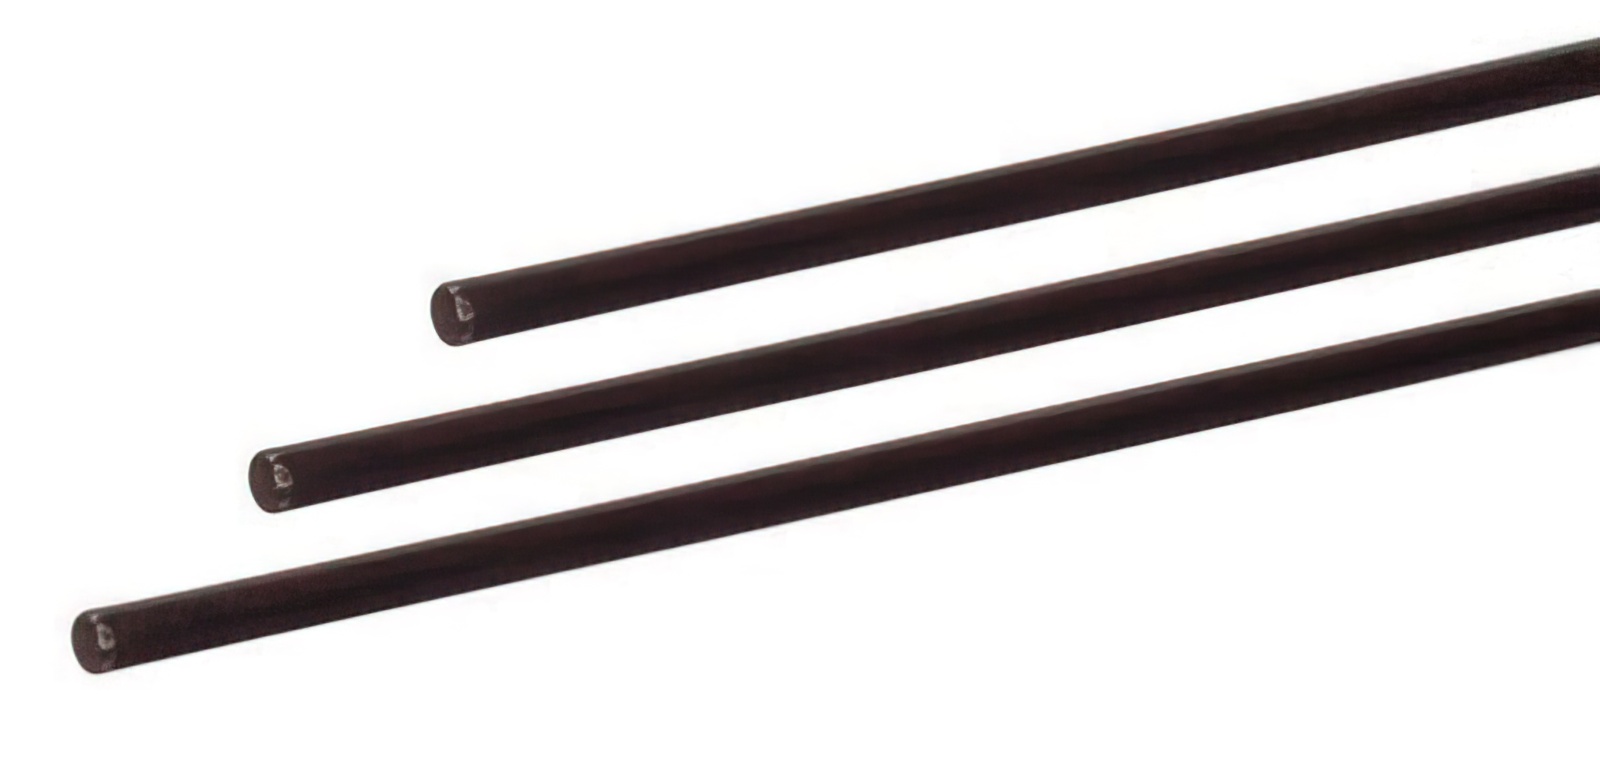 5 Stück - Gfk-Vollstab (Fiberglasstab/Glasfaserstab) 5 mm 100 cm schwarz für Drachen- und Modellbau Basteln Montagen Messebau Industrie Haushalt